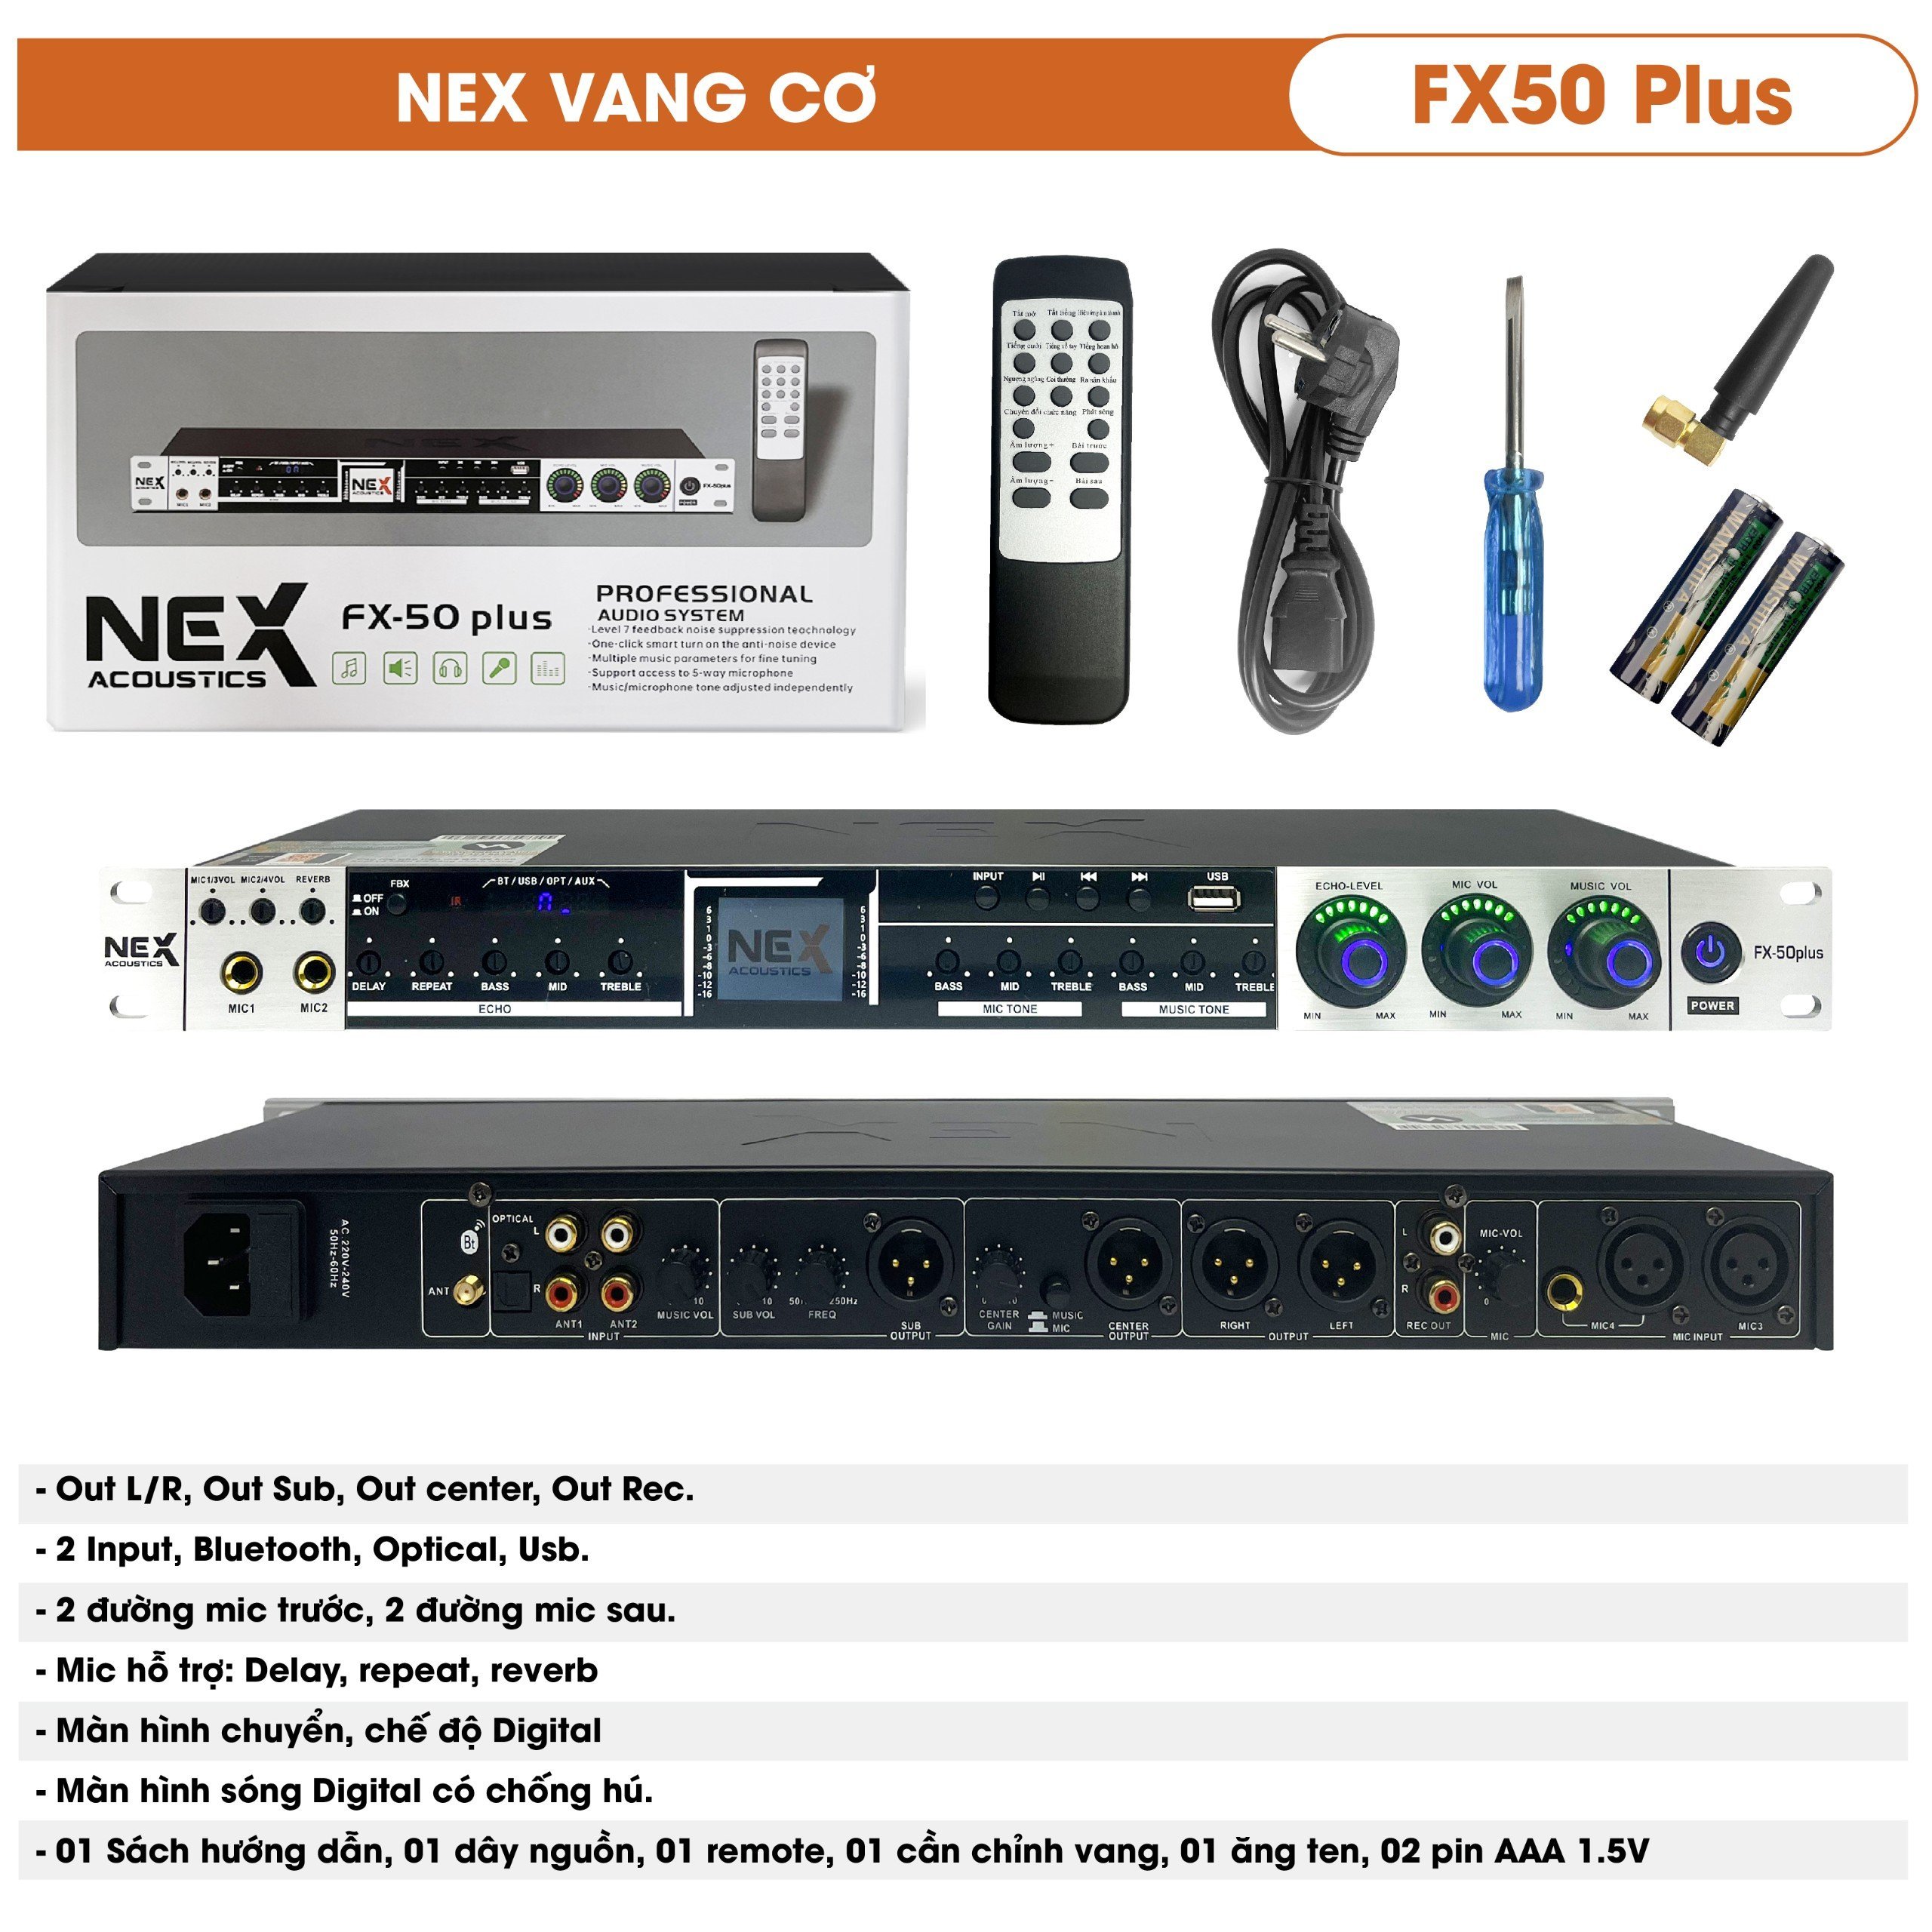 Vang cơ Nex FX50 Plus có Bluetooth và usb chống hú tốt kèm remote